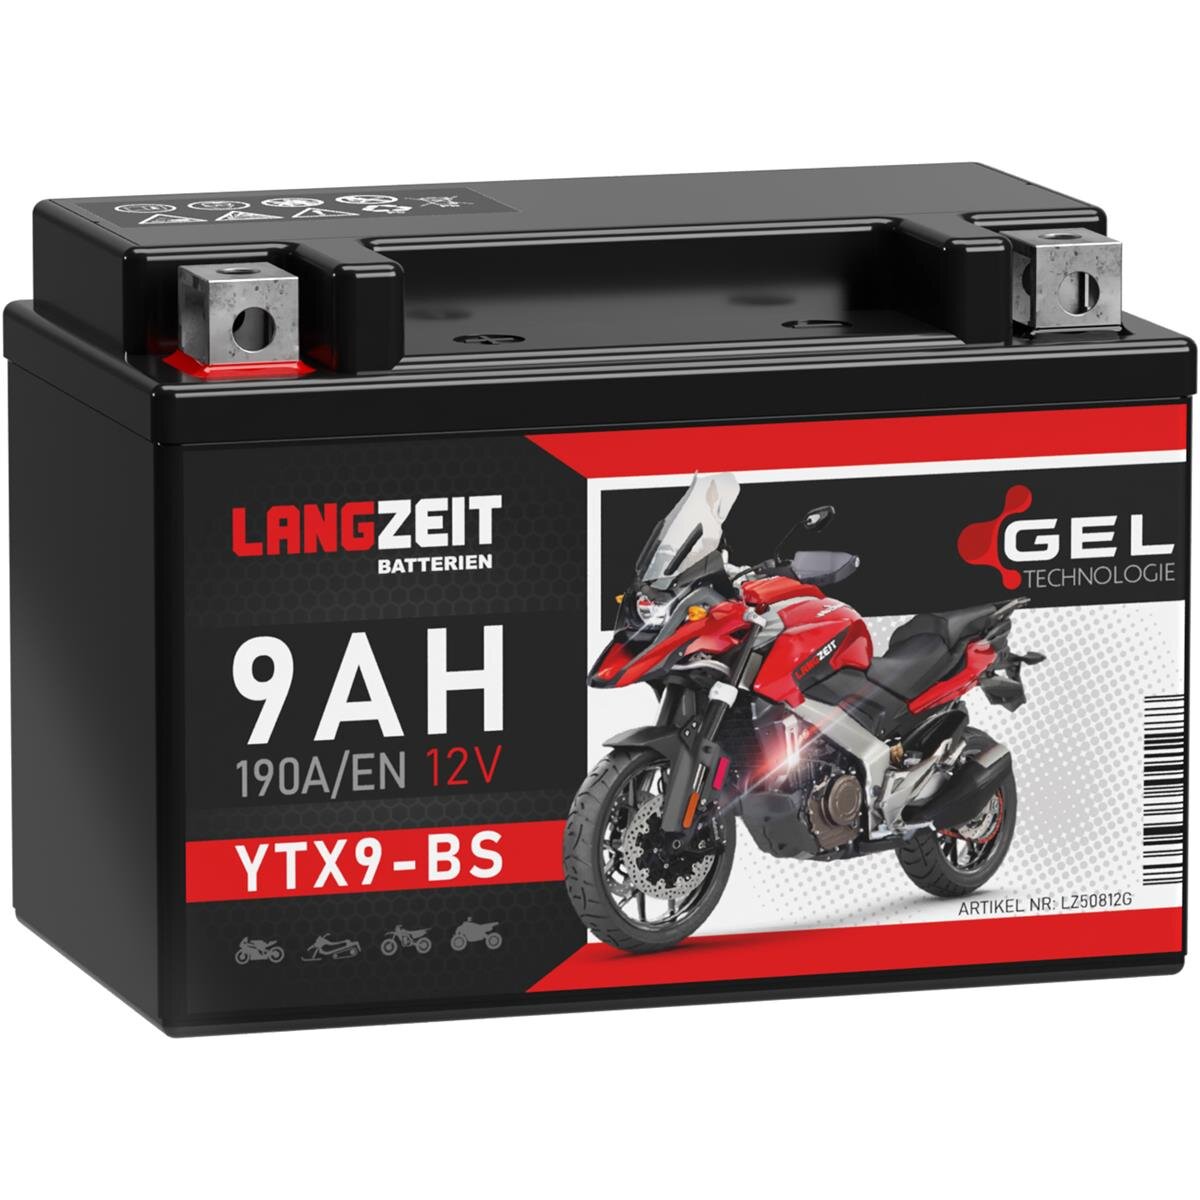 Langzeit Gel Motorradbatterie YTX9-BS 9Ah 12V, 26,90 €